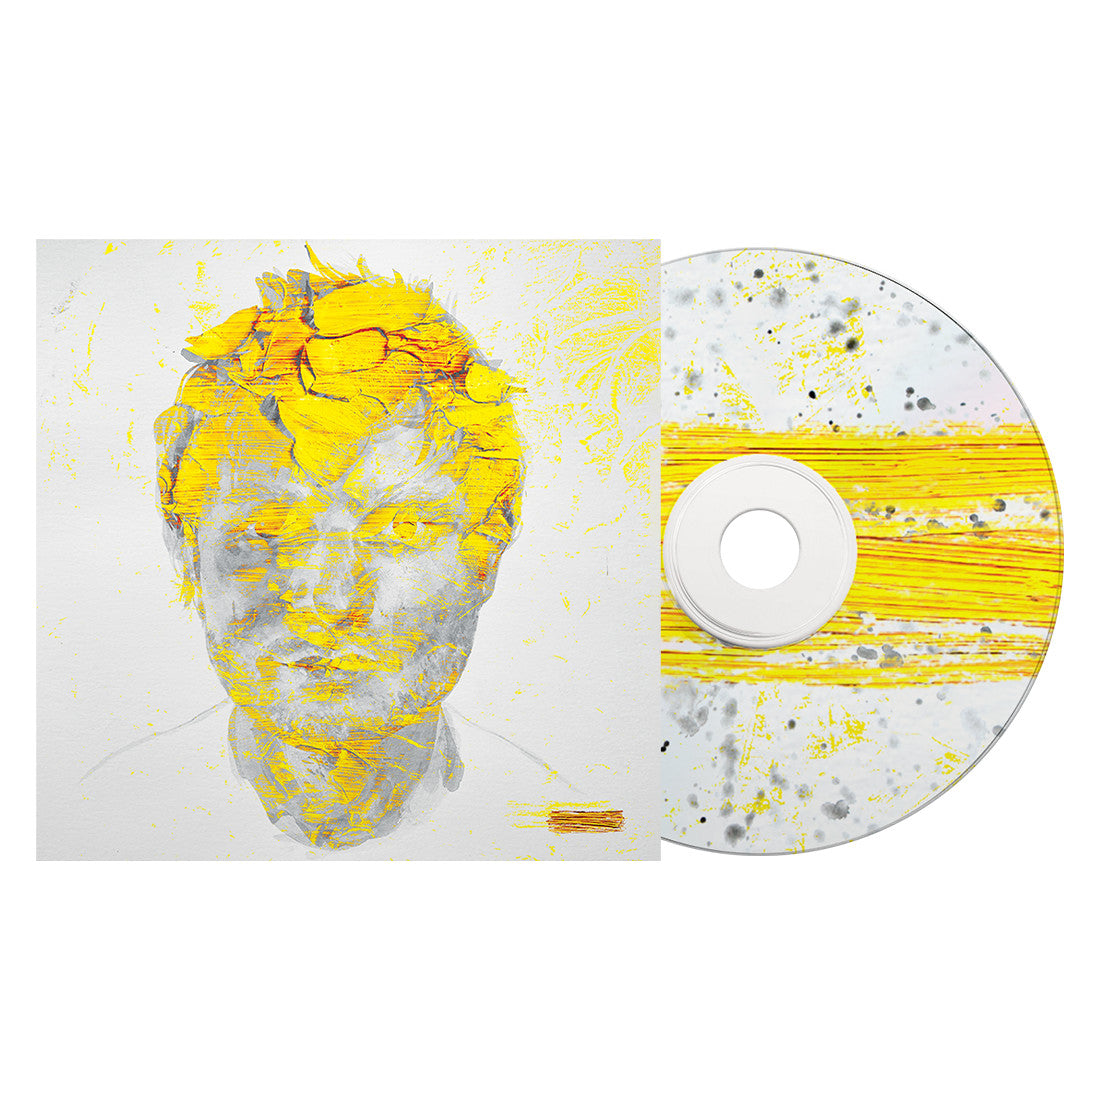 Ed Sheeran- - (Subtract) (Deluxe Edition) (PREORDER) - Darkside Records